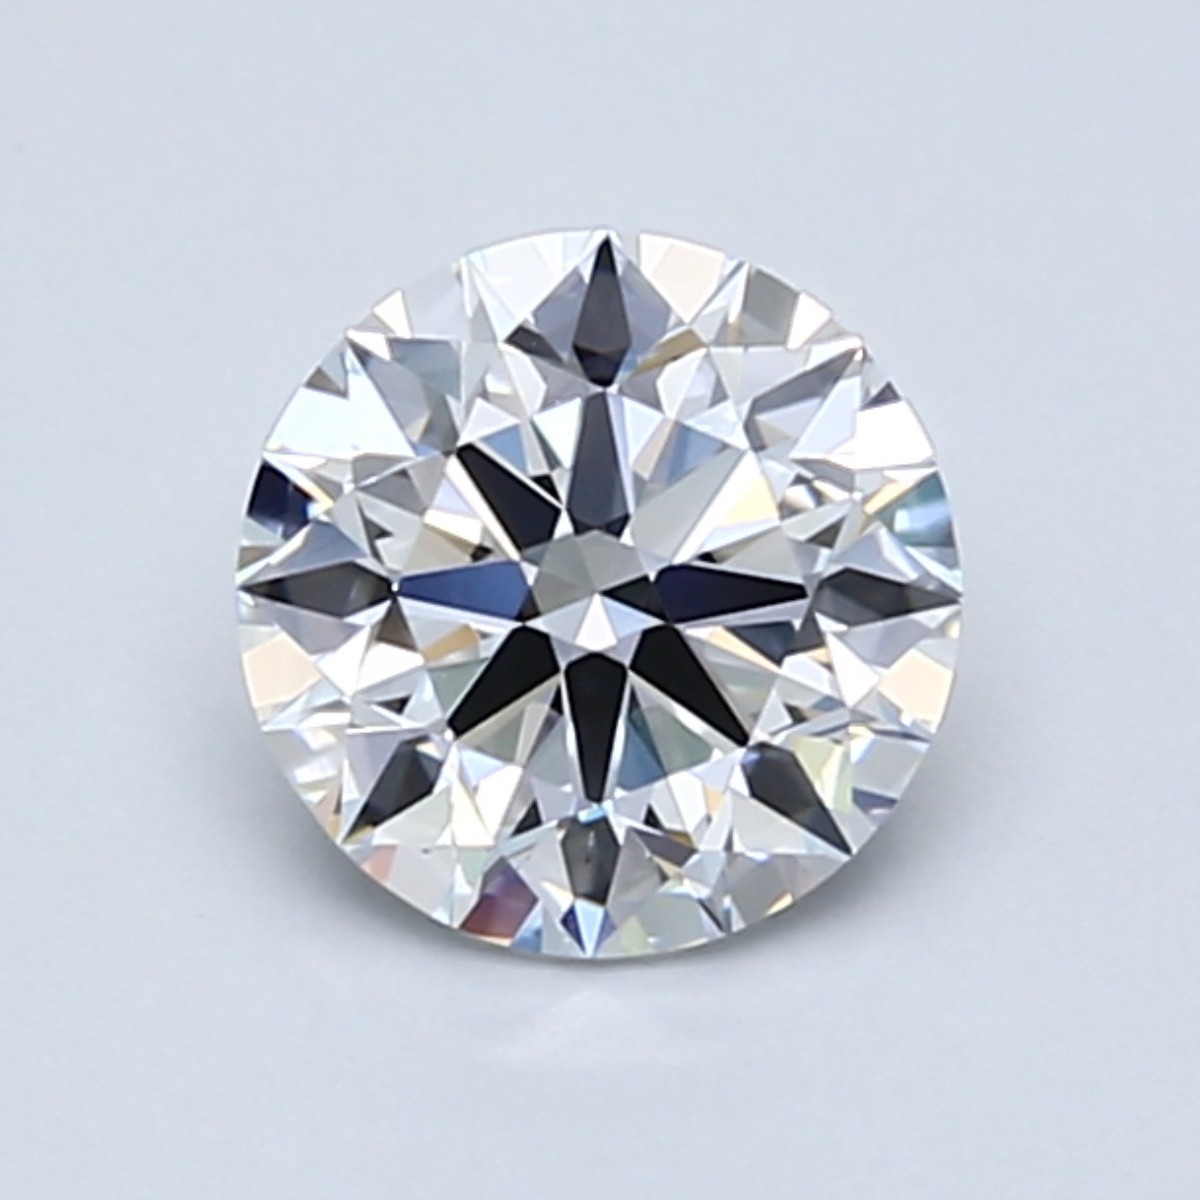 1 carat D color diamond